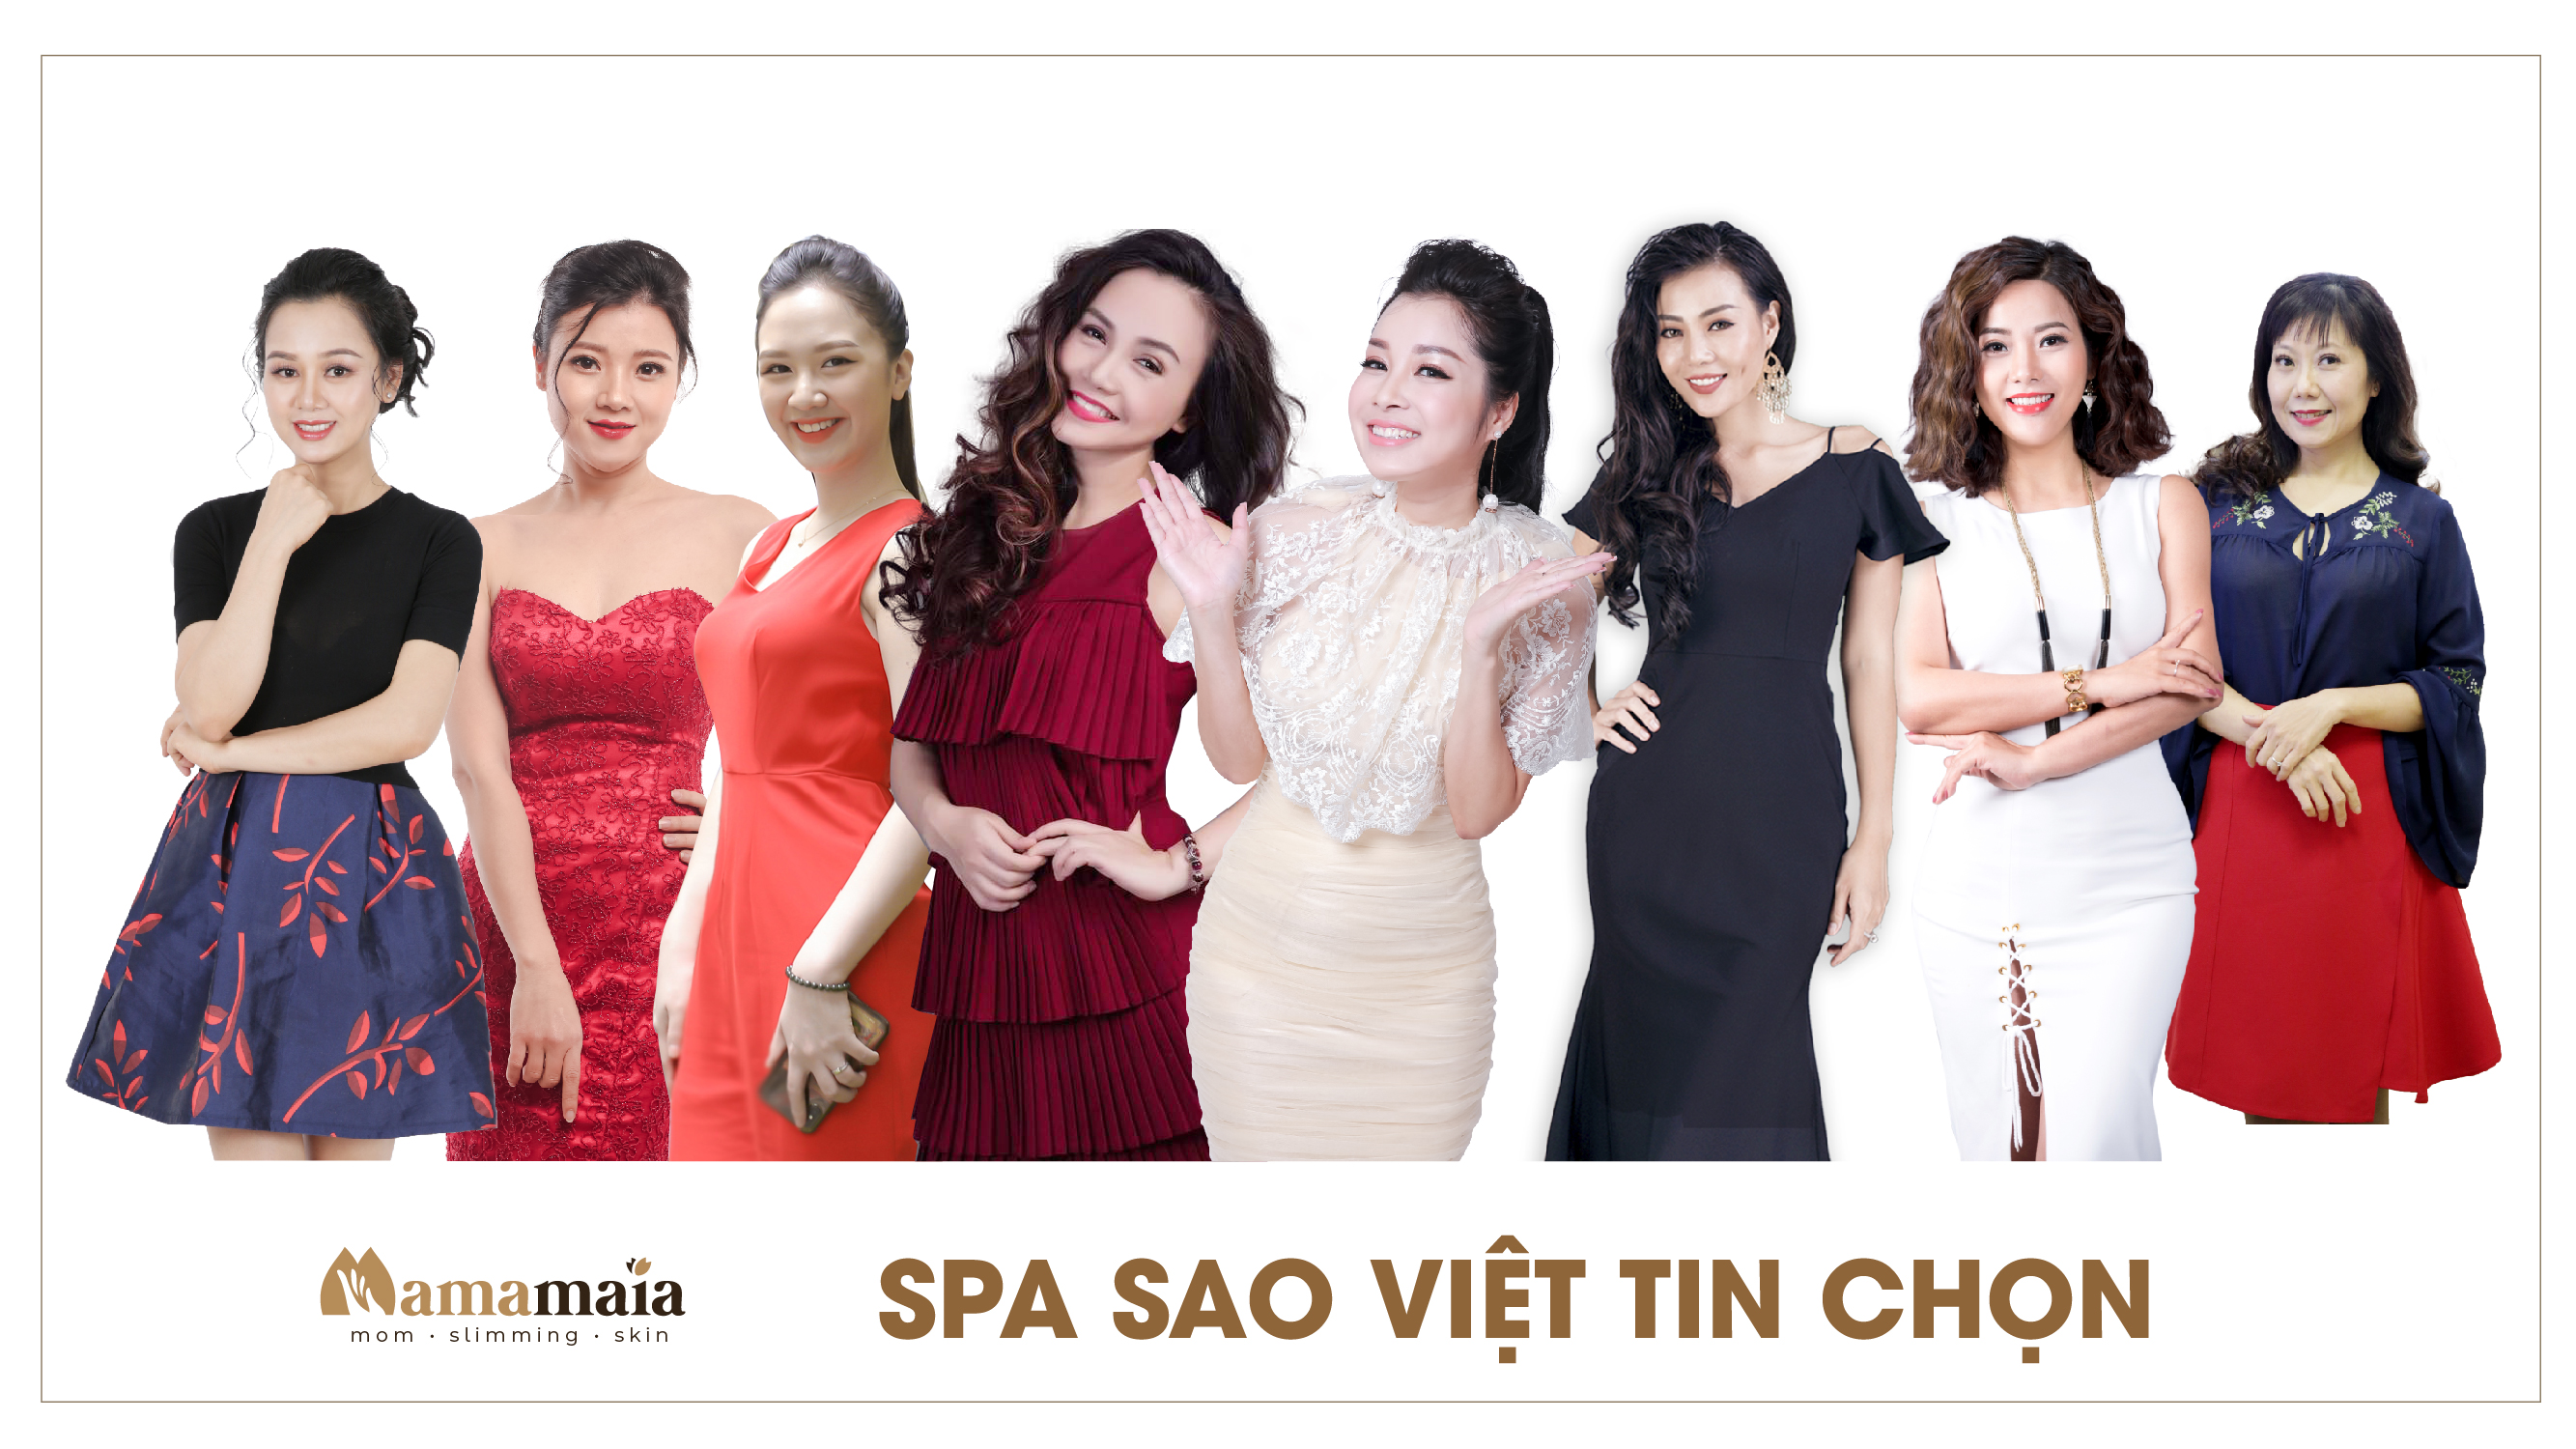 Sao Viet Tin Chon 1 01 Png